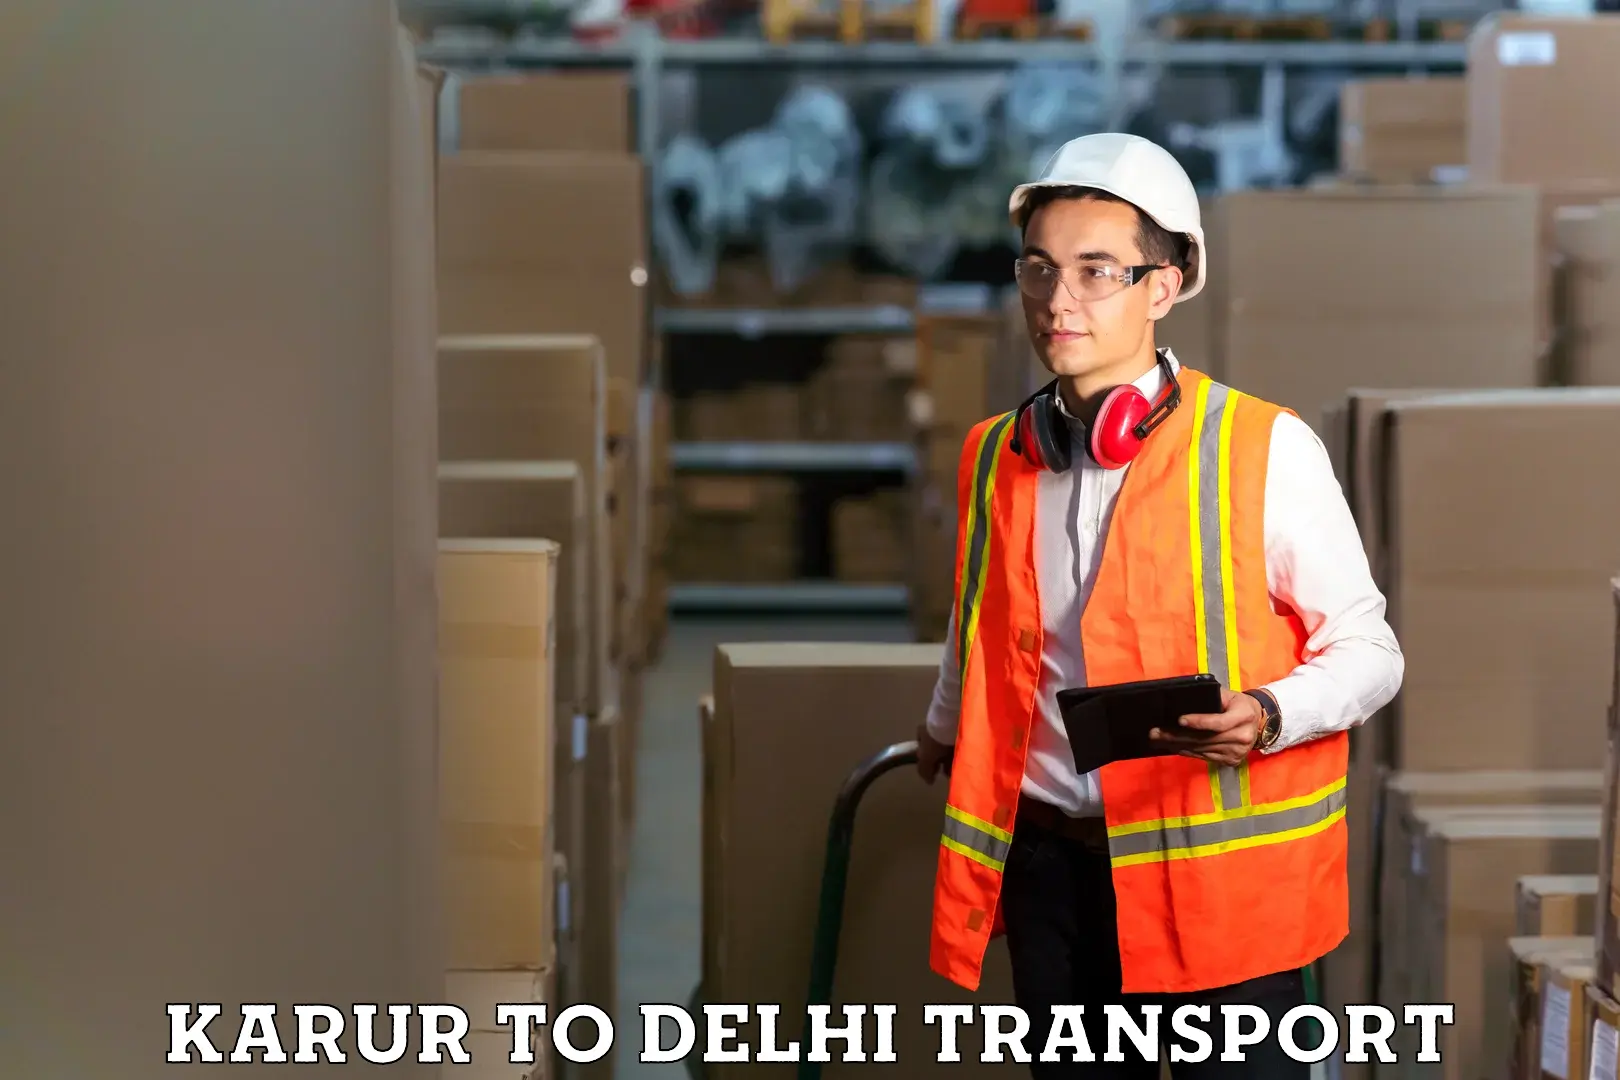 Shipping partner Karur to Lodhi Road